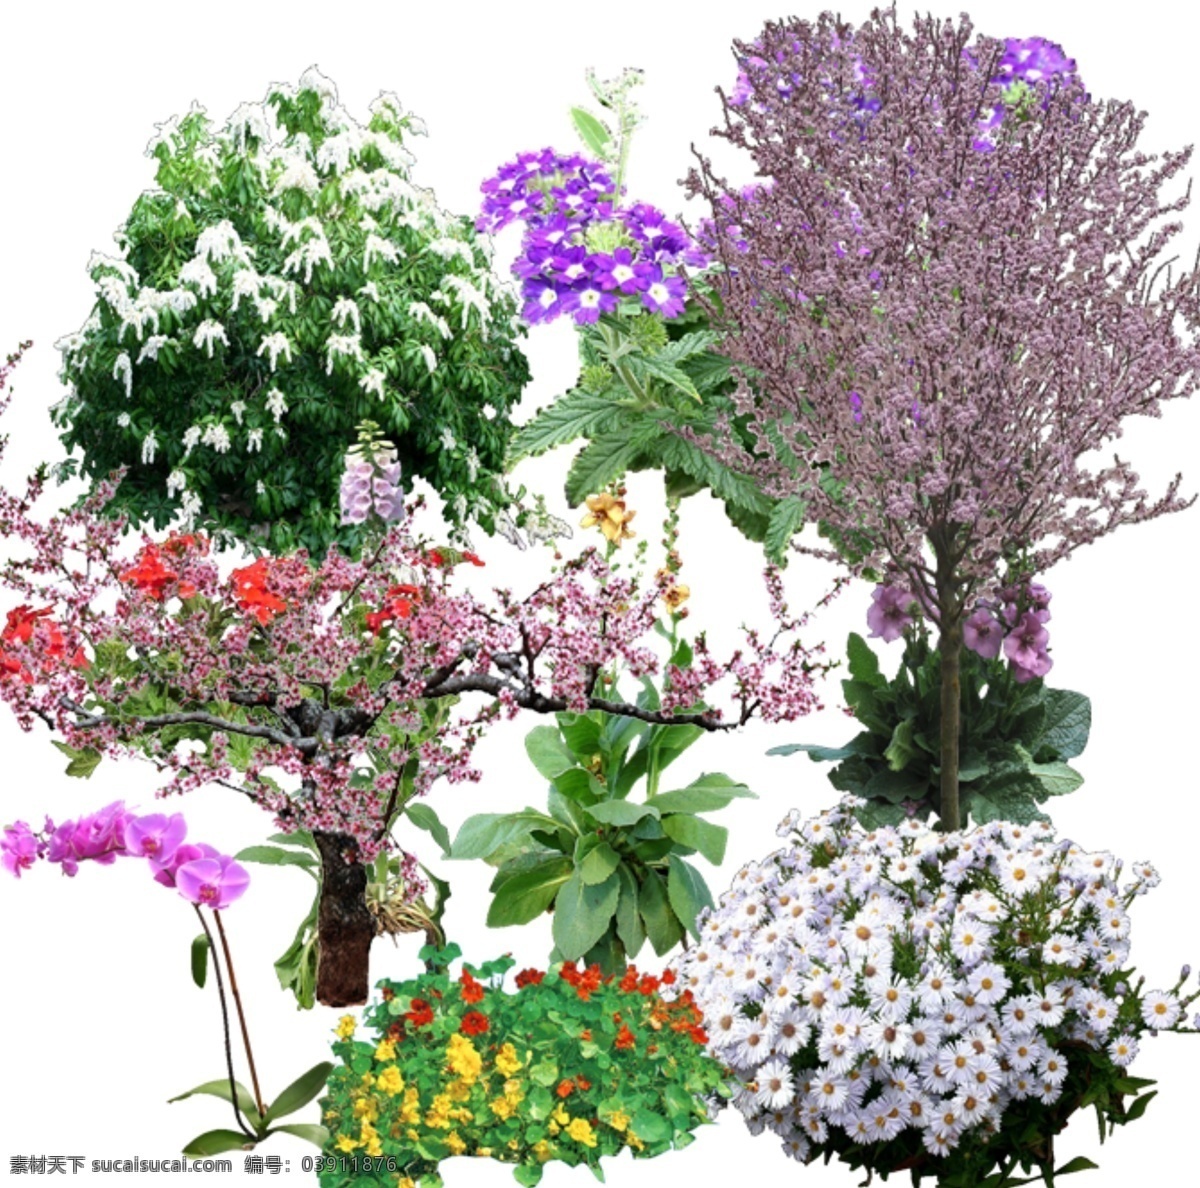 景观 ps 效果图 后期 植物 花卉 环境设计 景观设计